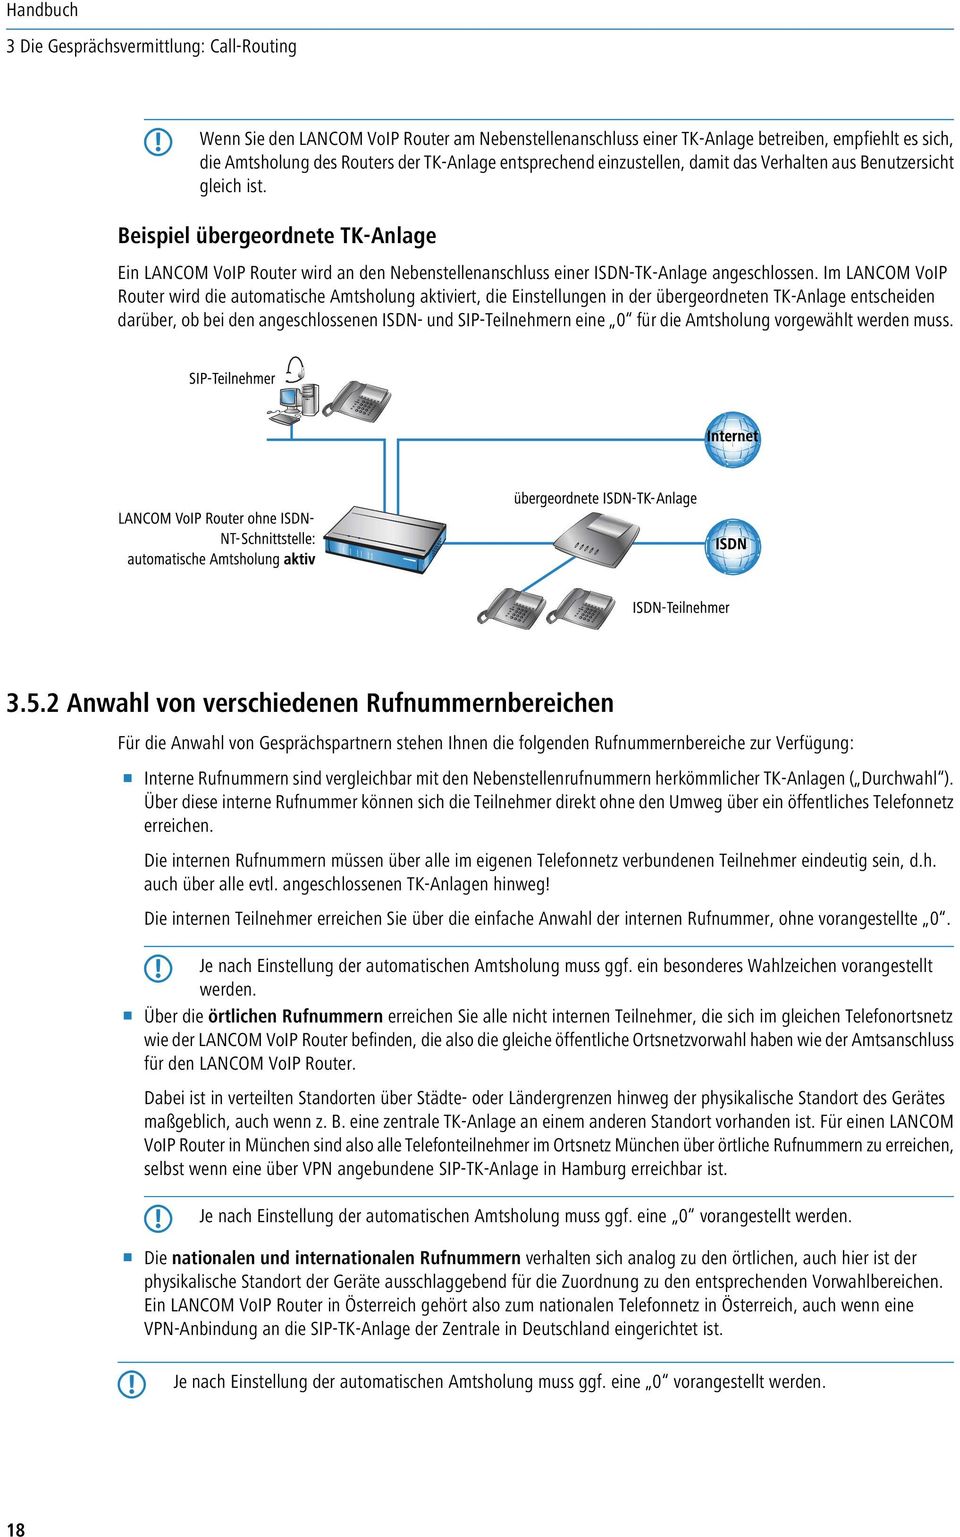 Im LANCOM VoIP Router wird die automatische Amtsholung aktiviert, die Einstellungen in der übergeordneten TK-Anlage entscheiden darüber, ob bei den angeschlossenen ISDN- und SIP-Teilnehmern eine 0